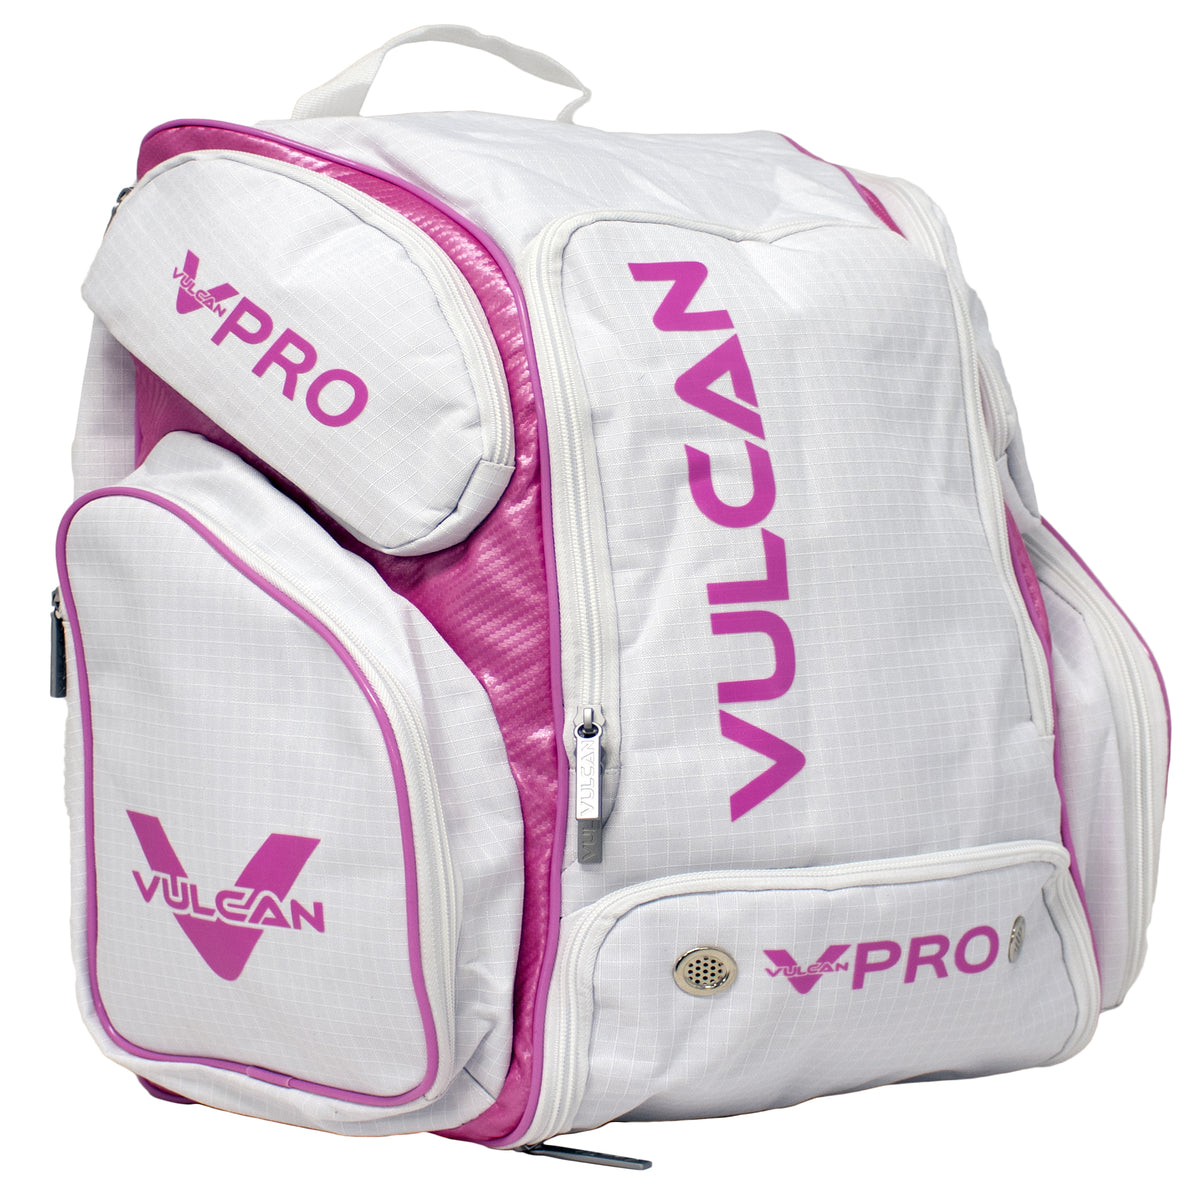 Vulcan Pickleball VPRO Backpack